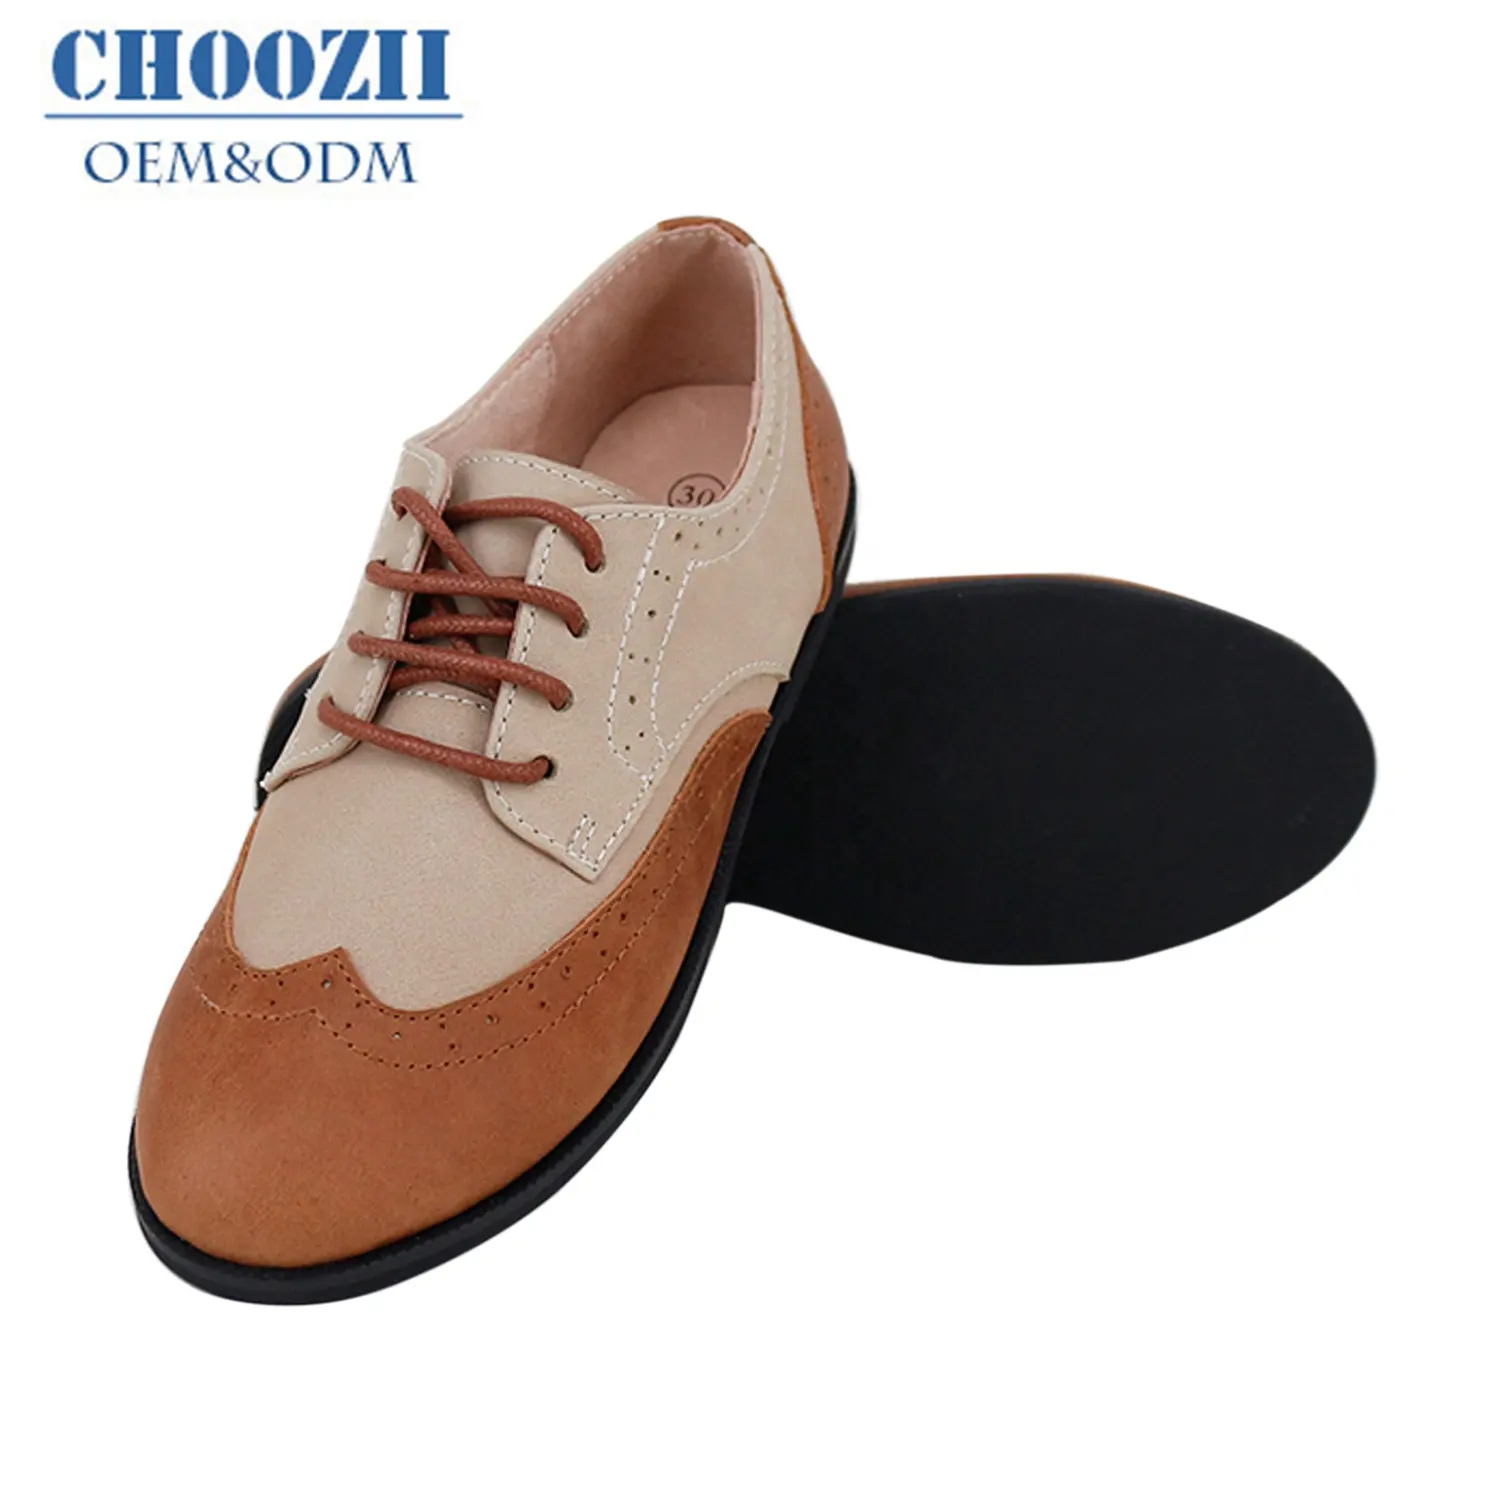 Choozii-zapatos planos de cuero con cera para niños, calzado informal personalizado de nuevo diseño